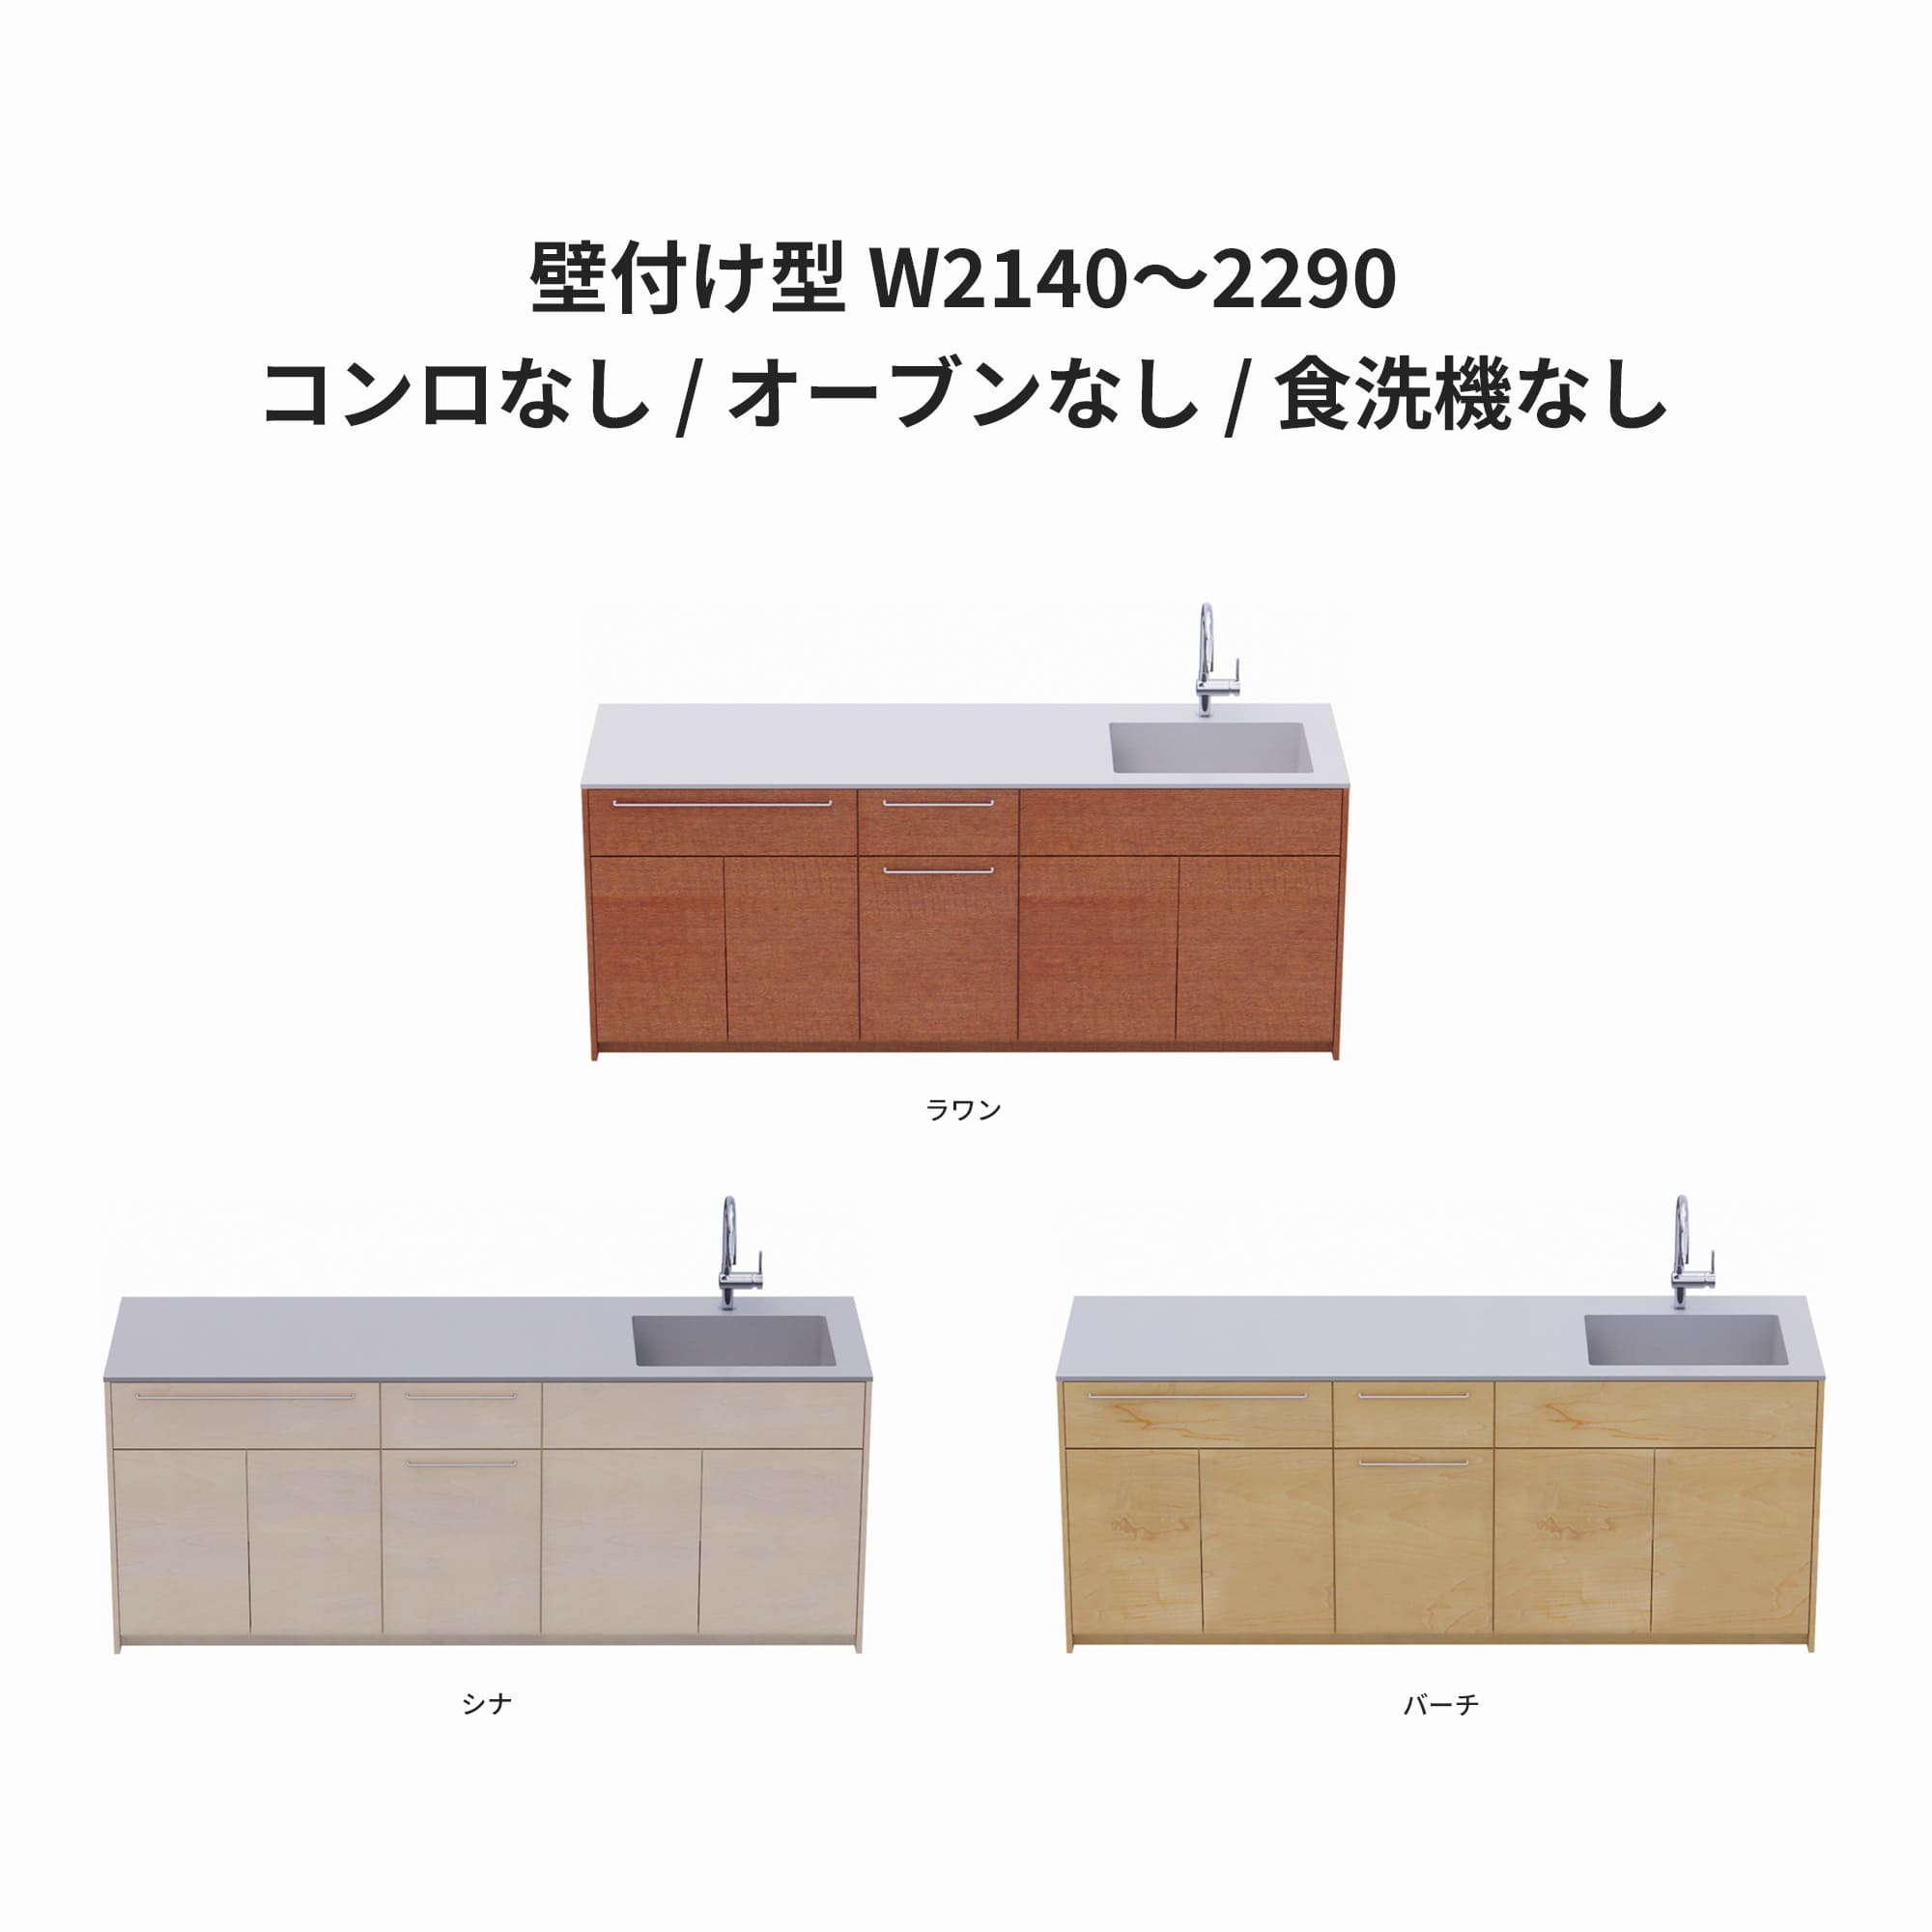 木製システムキッチン 壁付け型 W2140～2290・コンロなし / オーブンなし / 食洗機なし KB-KC022-18-G183 ラワン・シナ・バーチが選択できます